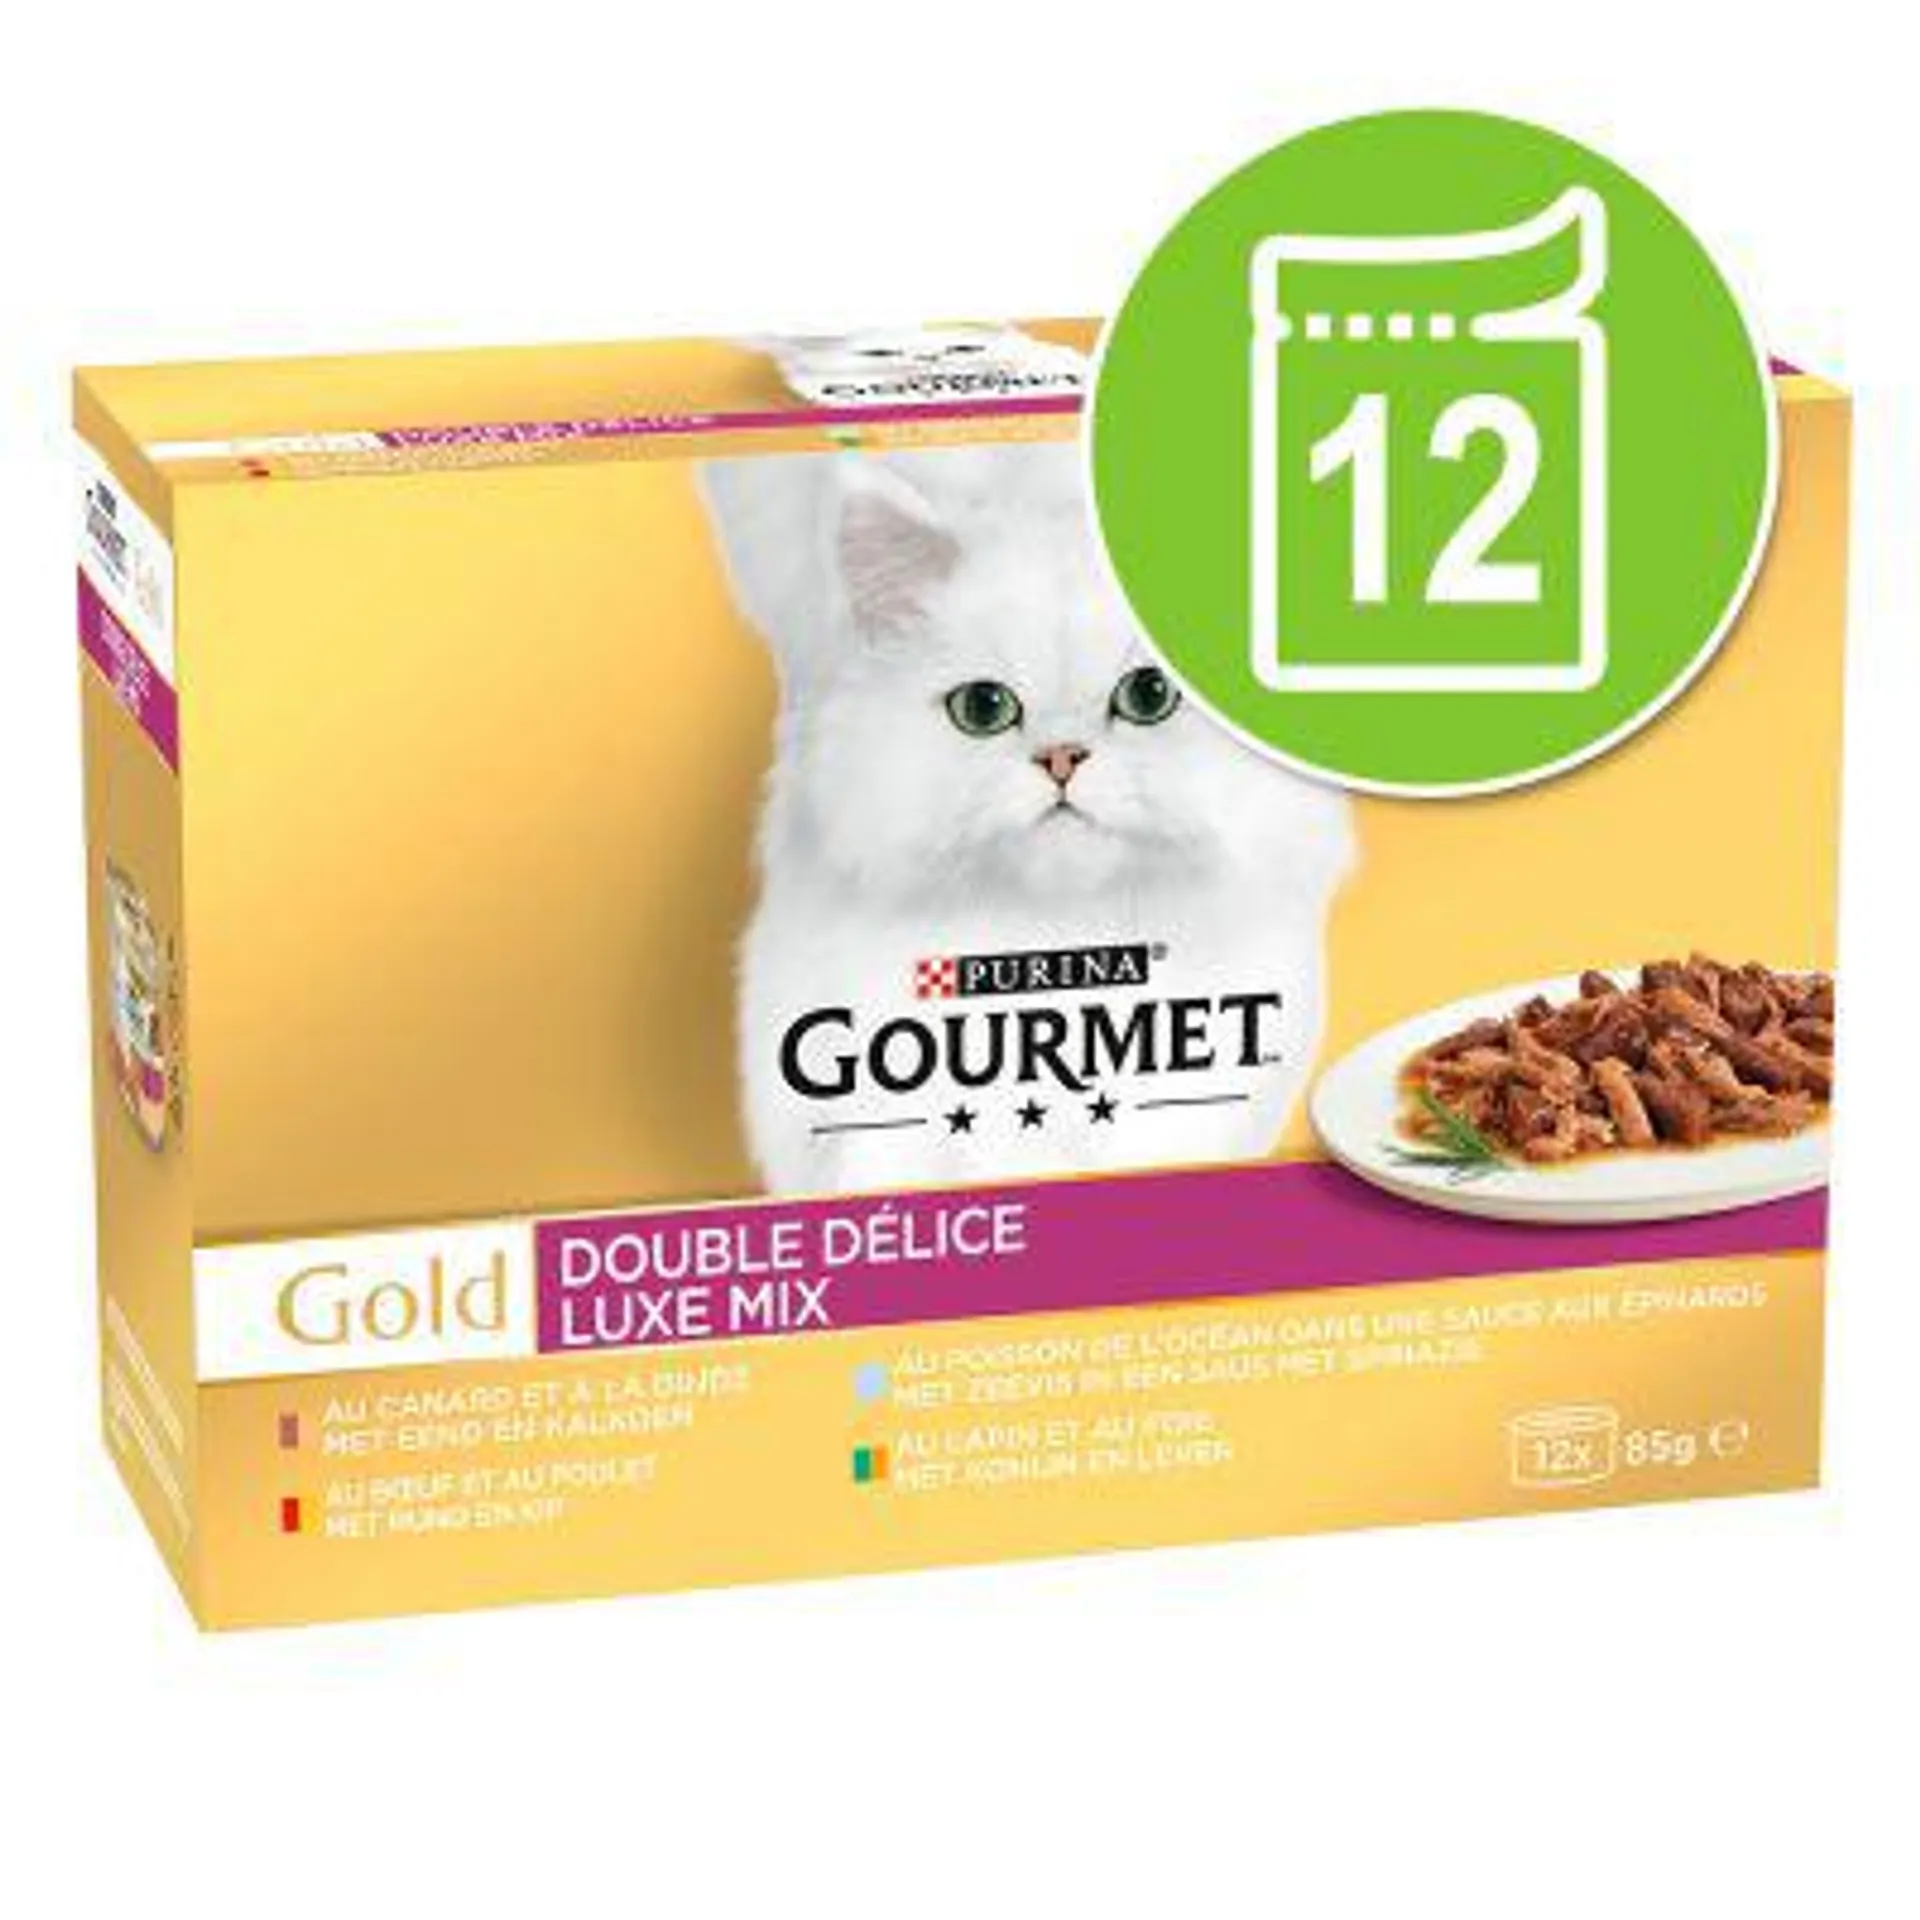 Gourmet Gold Duo Delice 12 x 85 g